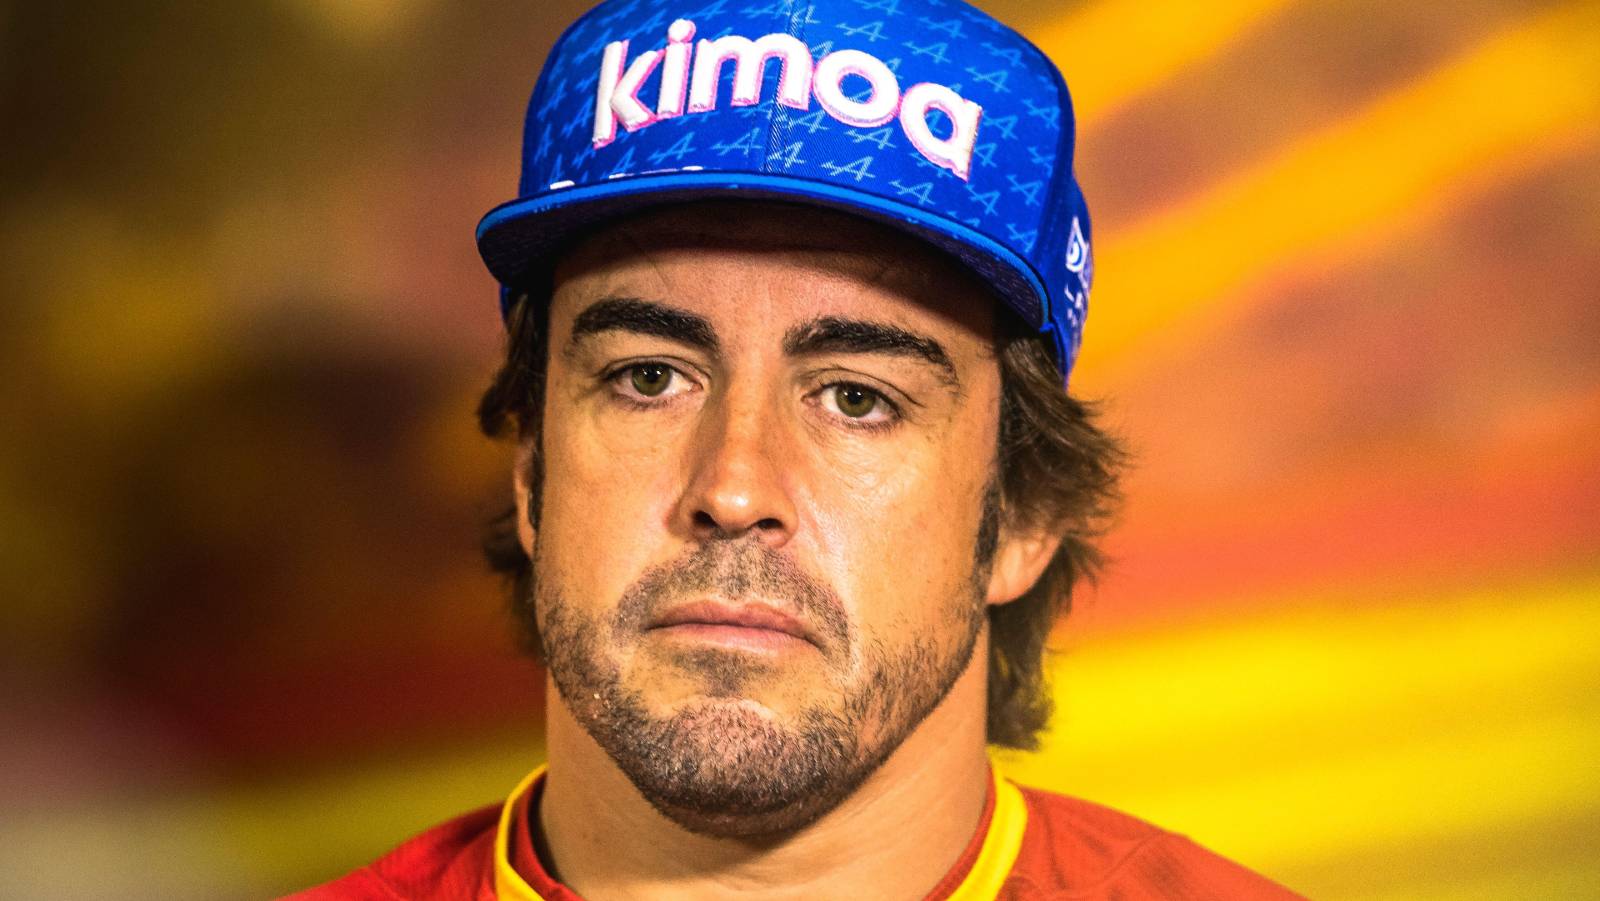 Fernando Alonso dalam air panas karena mengkritik tuan rumah Miami